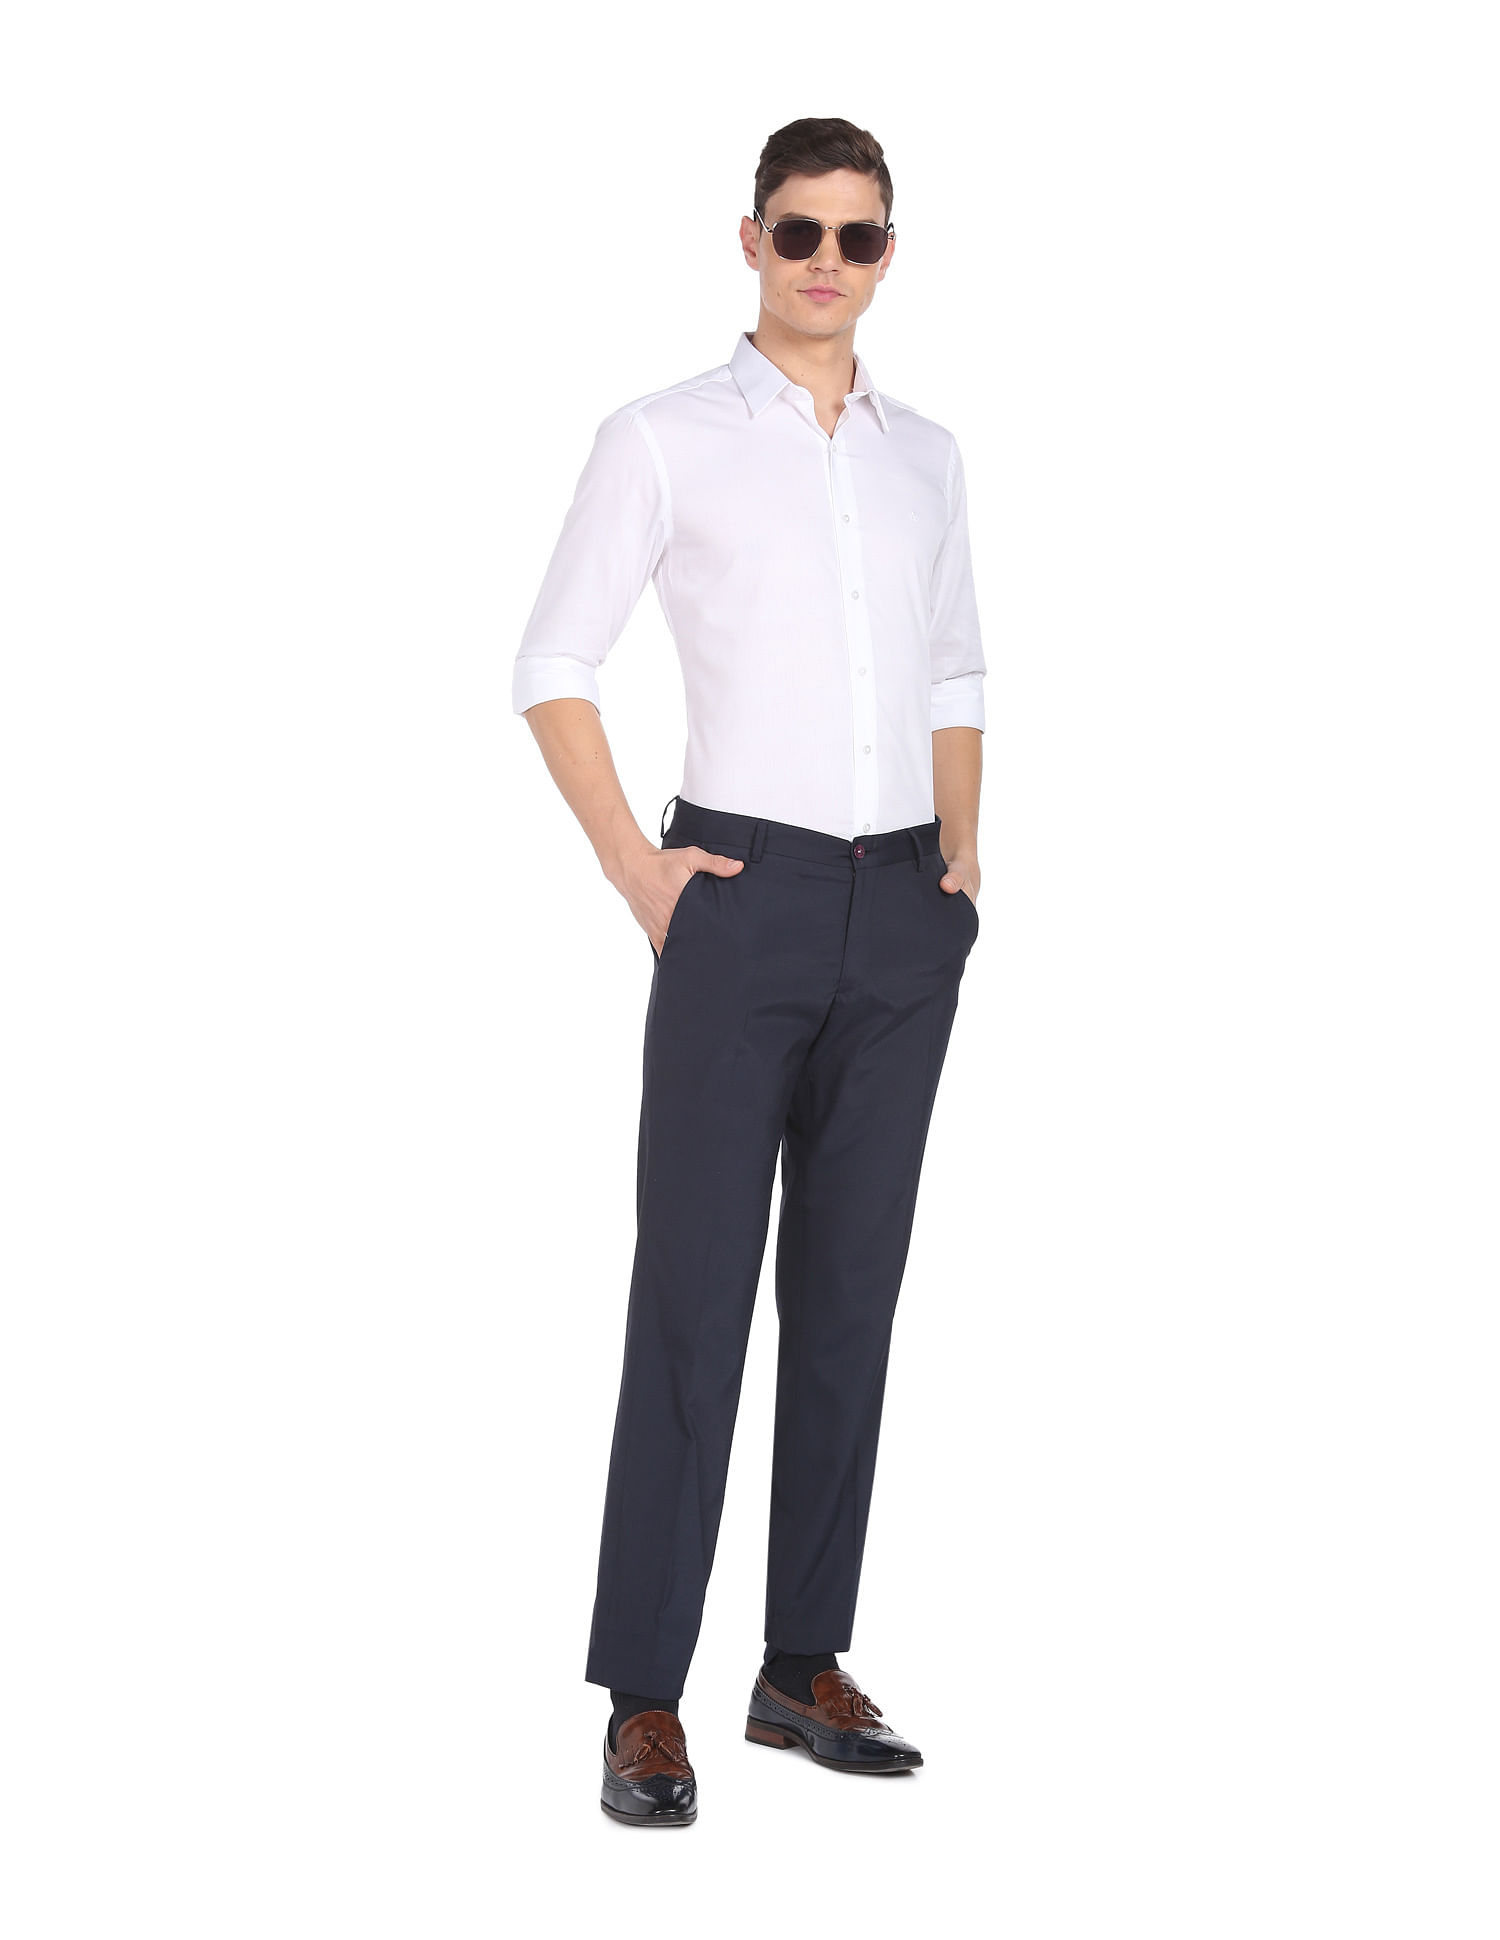 Medium Grey Self Design Full Length Formal Men Slim Fit Trousers